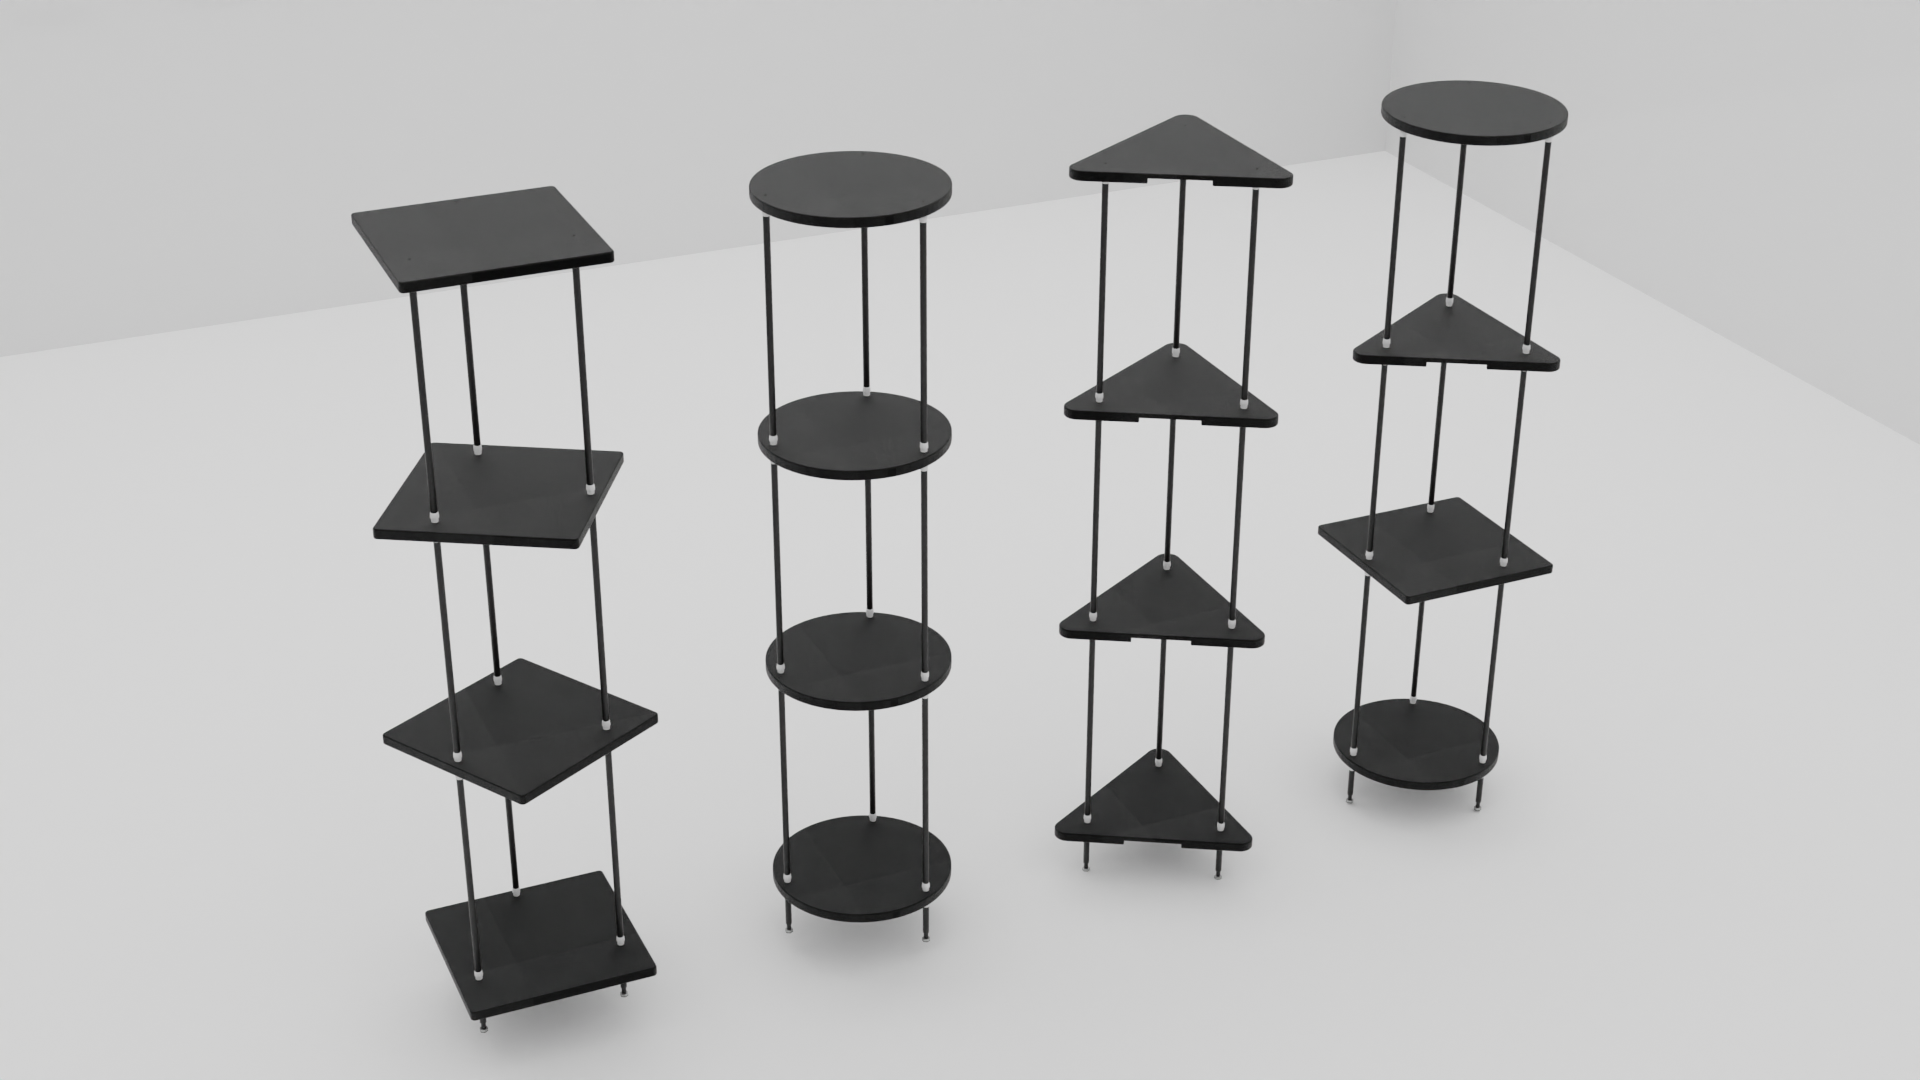 Fan modular furniture